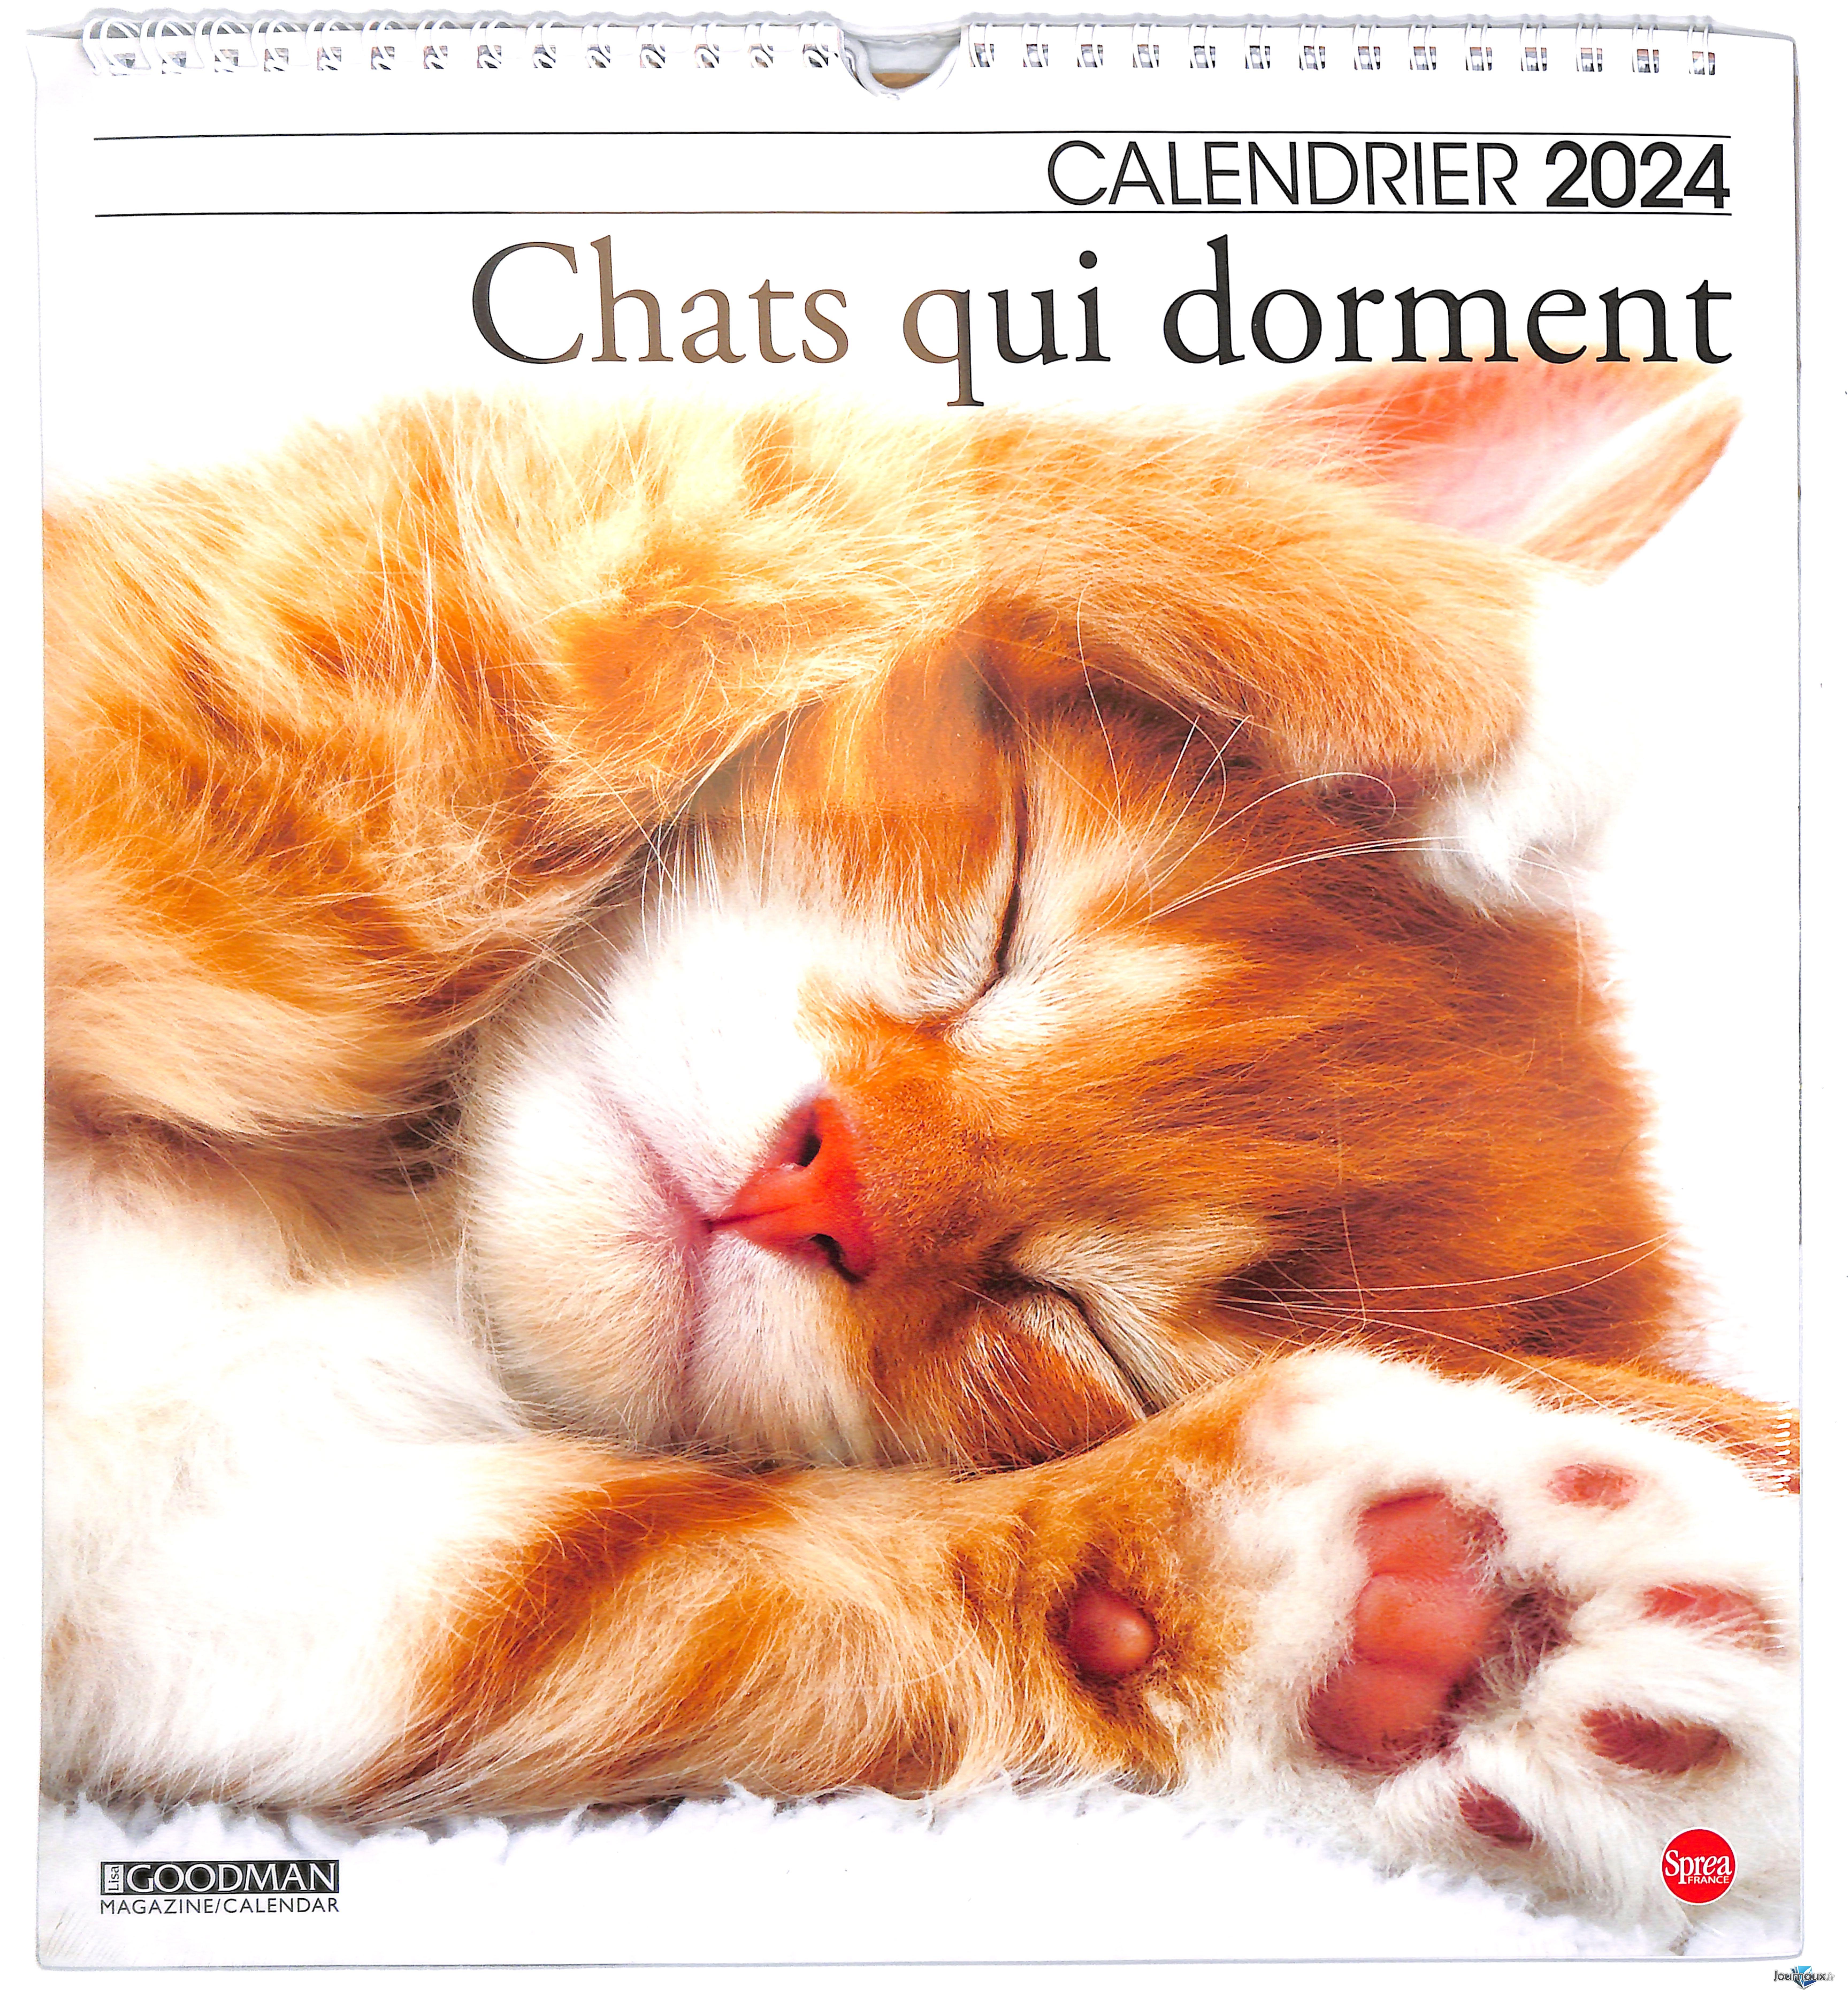  Calendrier 2024 Chats qui dorment